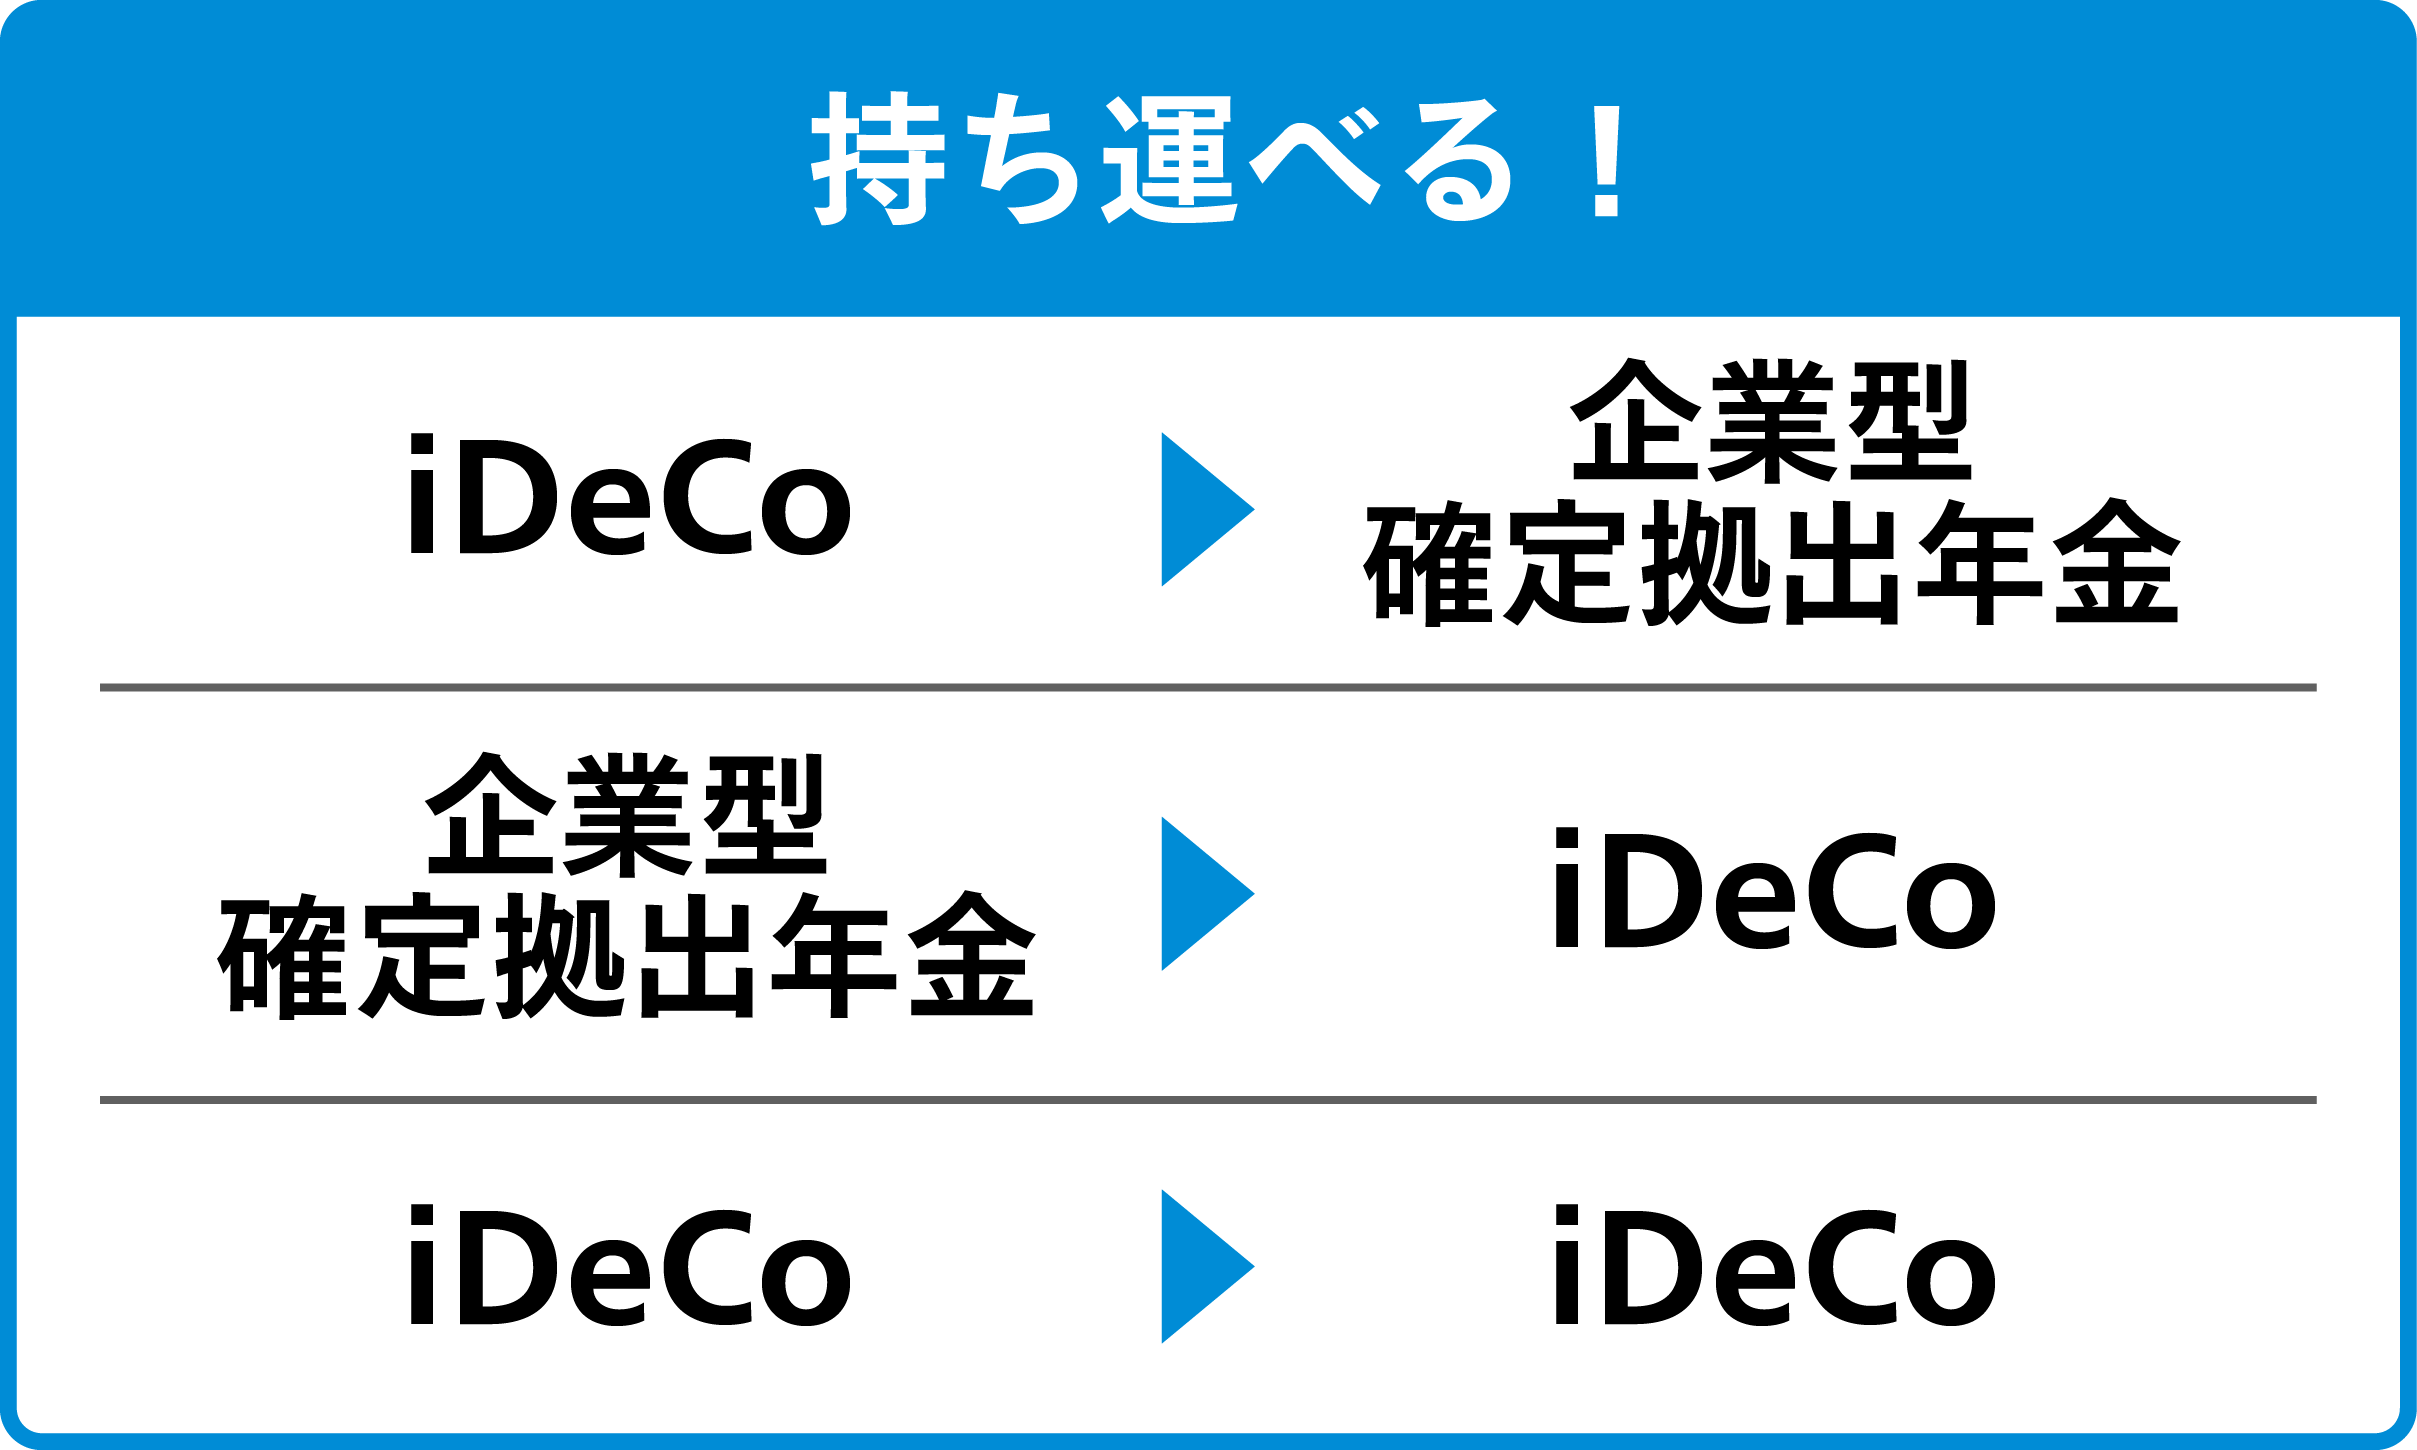 持ち運べる！iDeCo→企業型確定拠出年金、企業型確定拠出年金→iDeCo、iDeCo→iDeCo